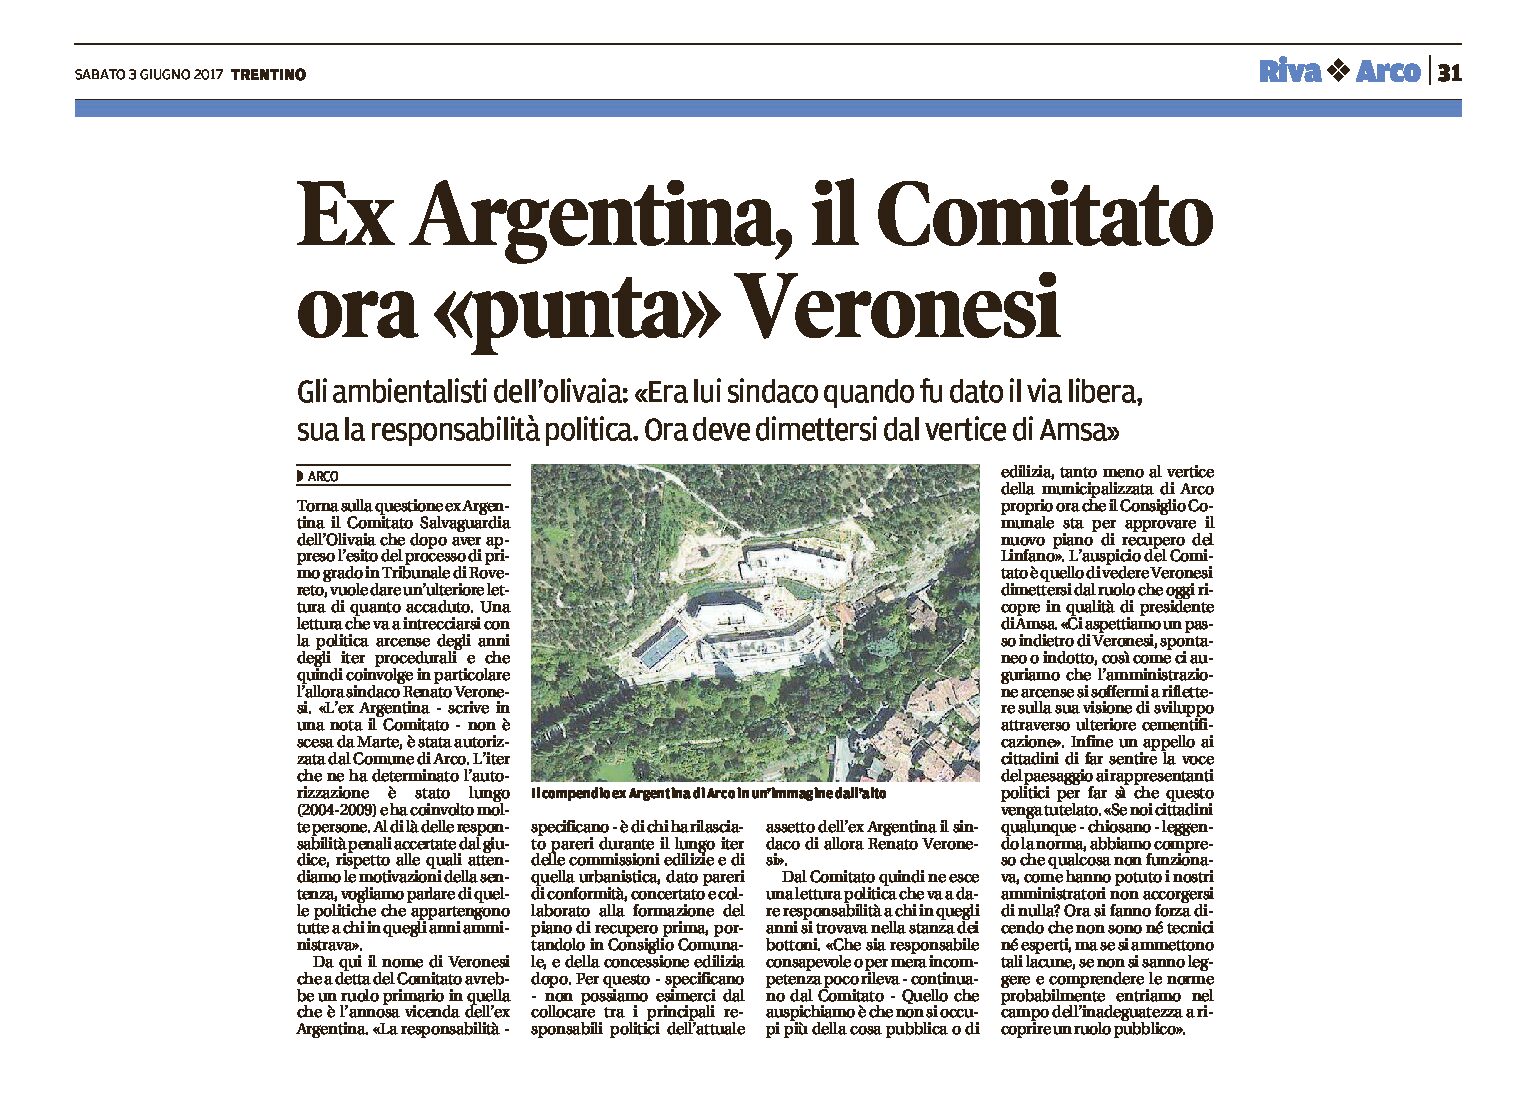 Arco, ex Argentina: il Comitato ora “punta” Veronesi. Deve dimettersi dal vertice di Amsa